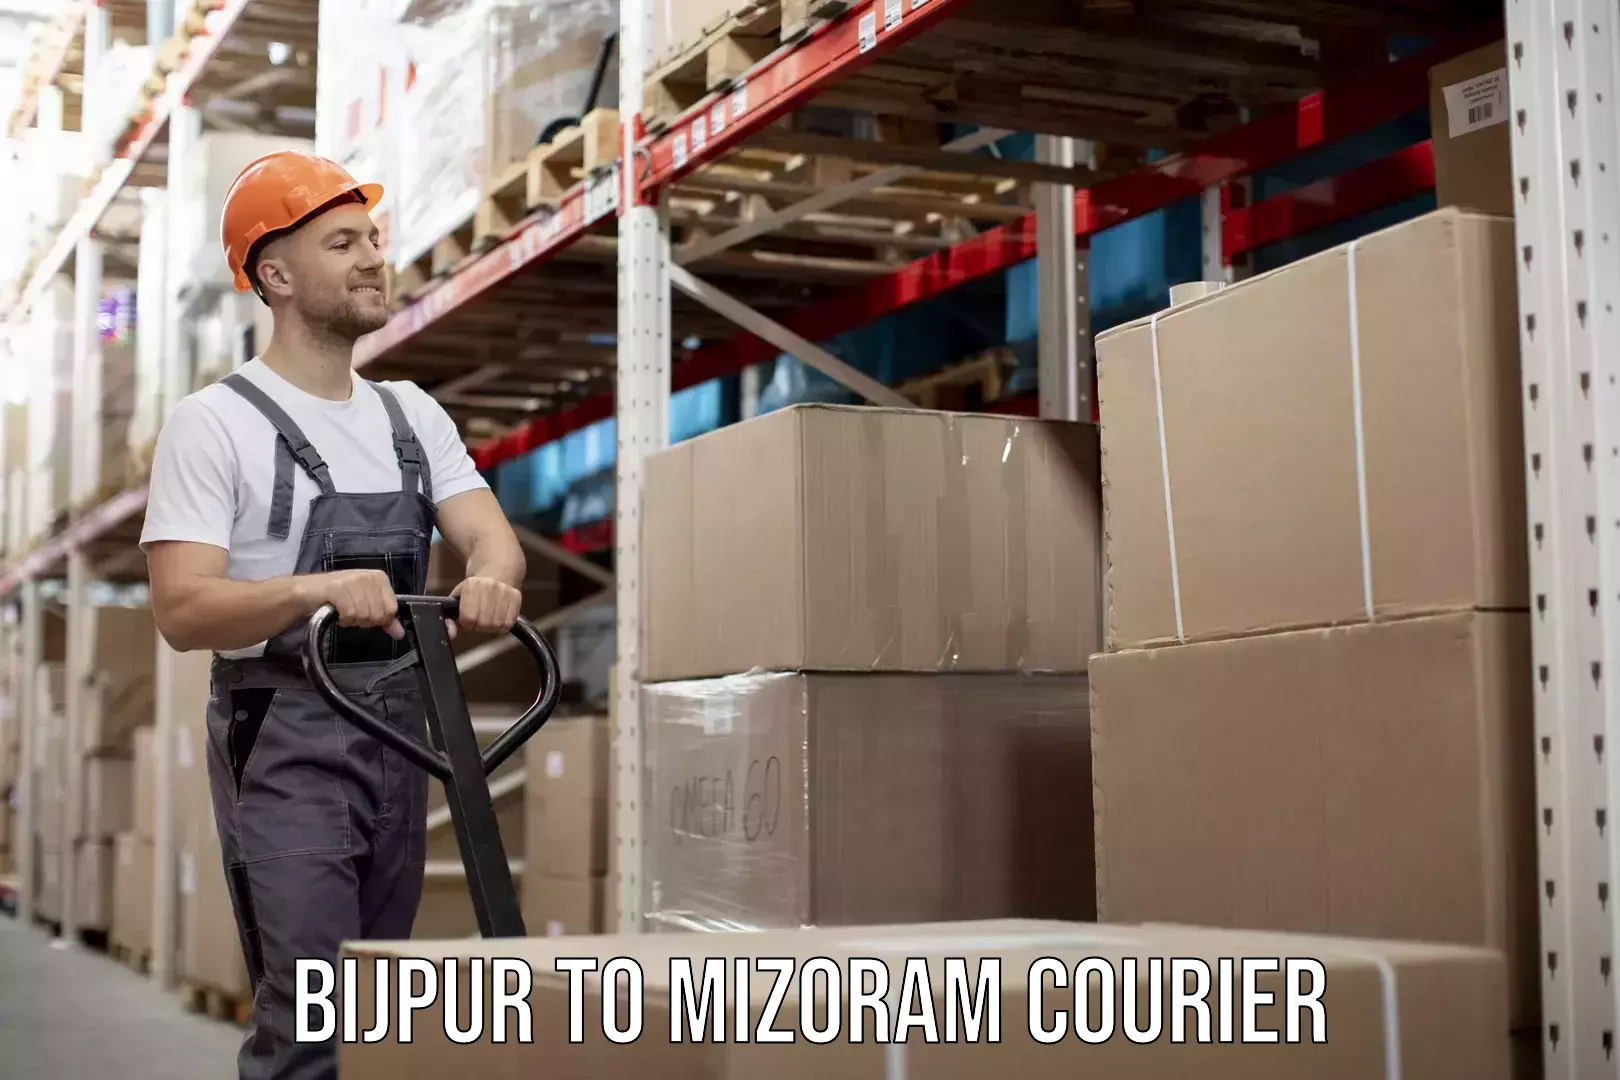 Next-generation courier services Bijpur to Mizoram